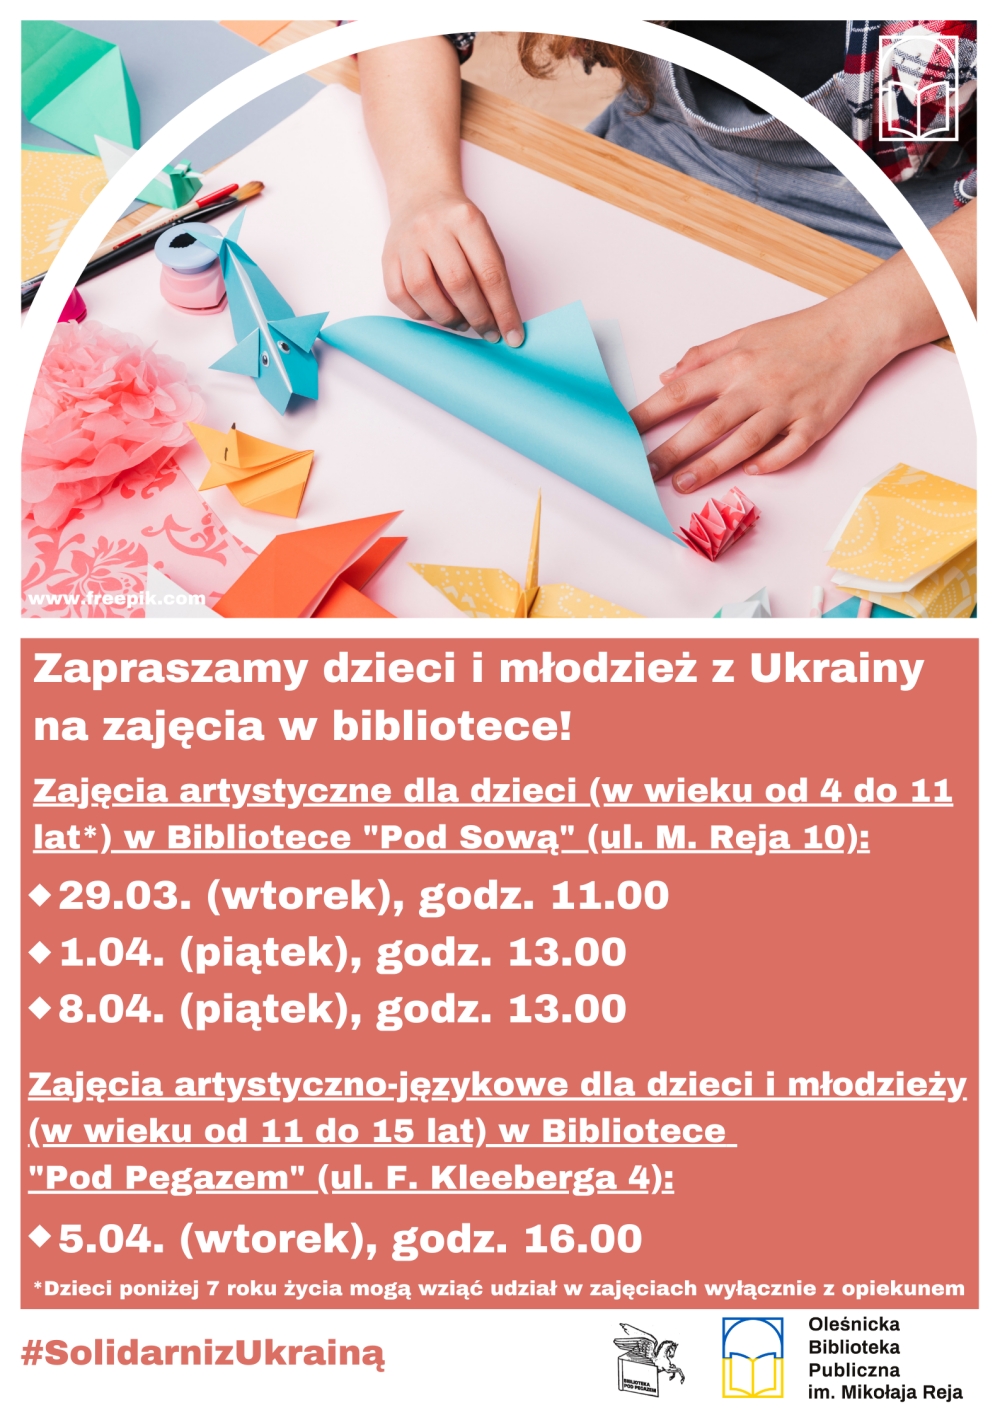 Plakat promujący zajęcia dla dzieci z Ukrainy w języku polskim